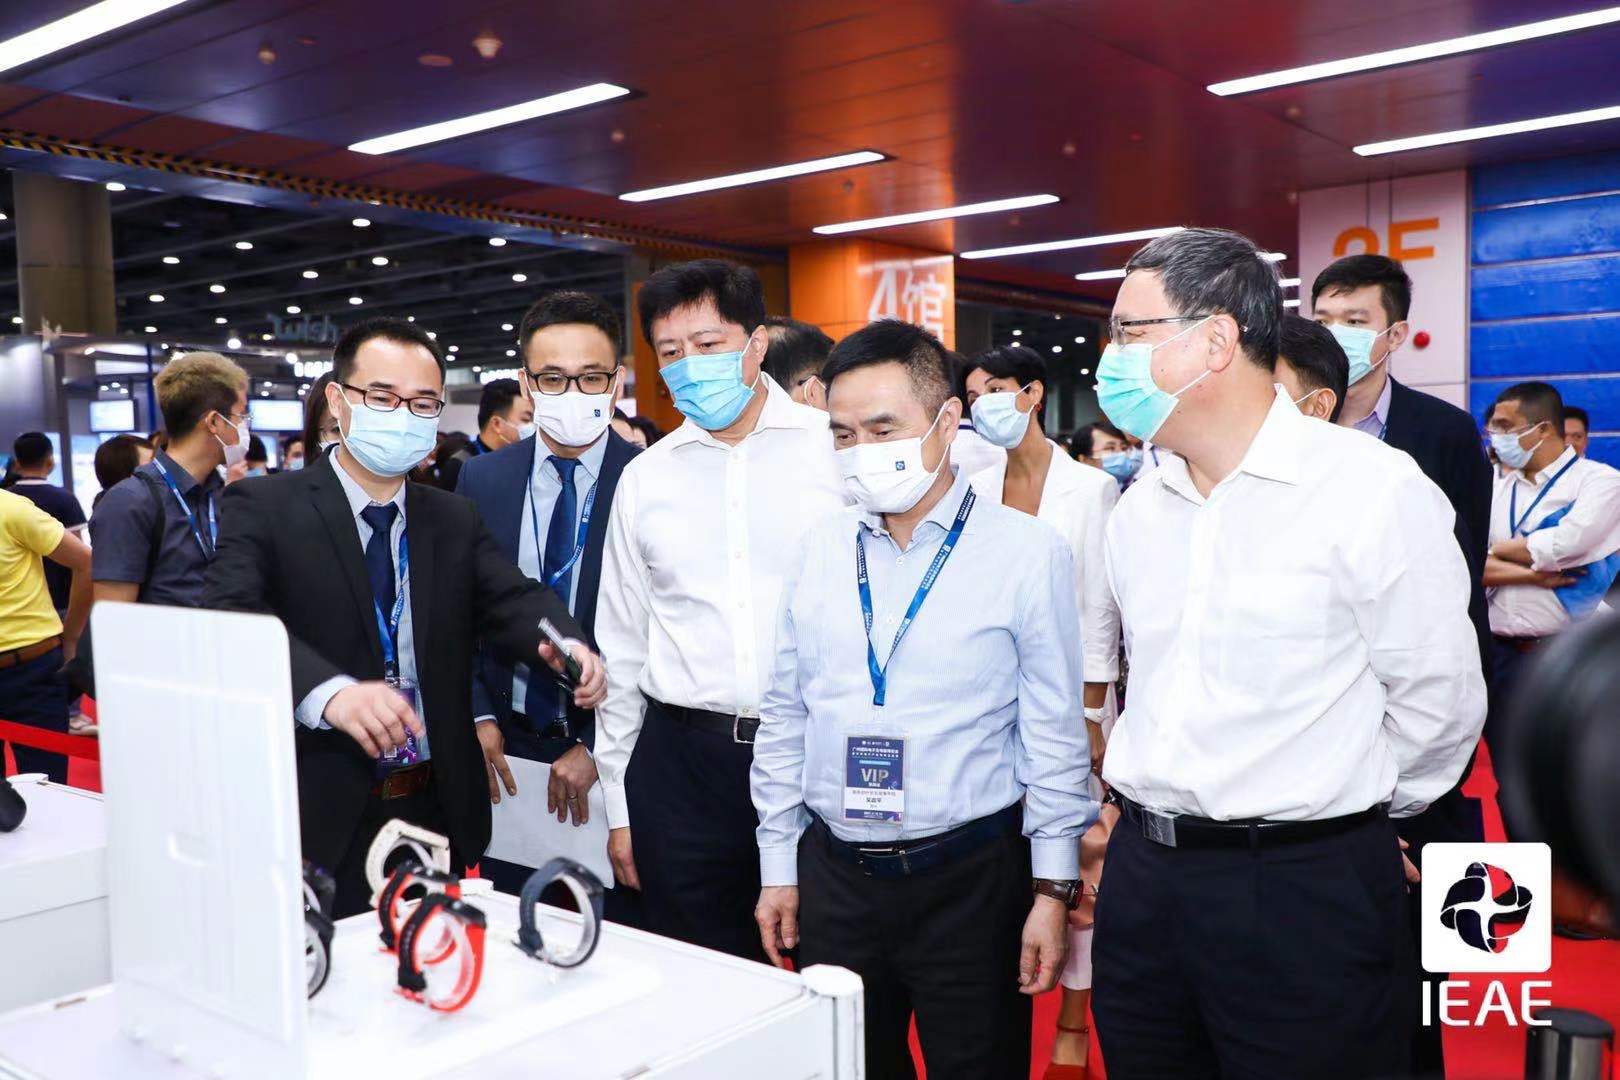  首届广州国际电子及电器博览会12日开幕  千余企业“拥内需，拓全球”